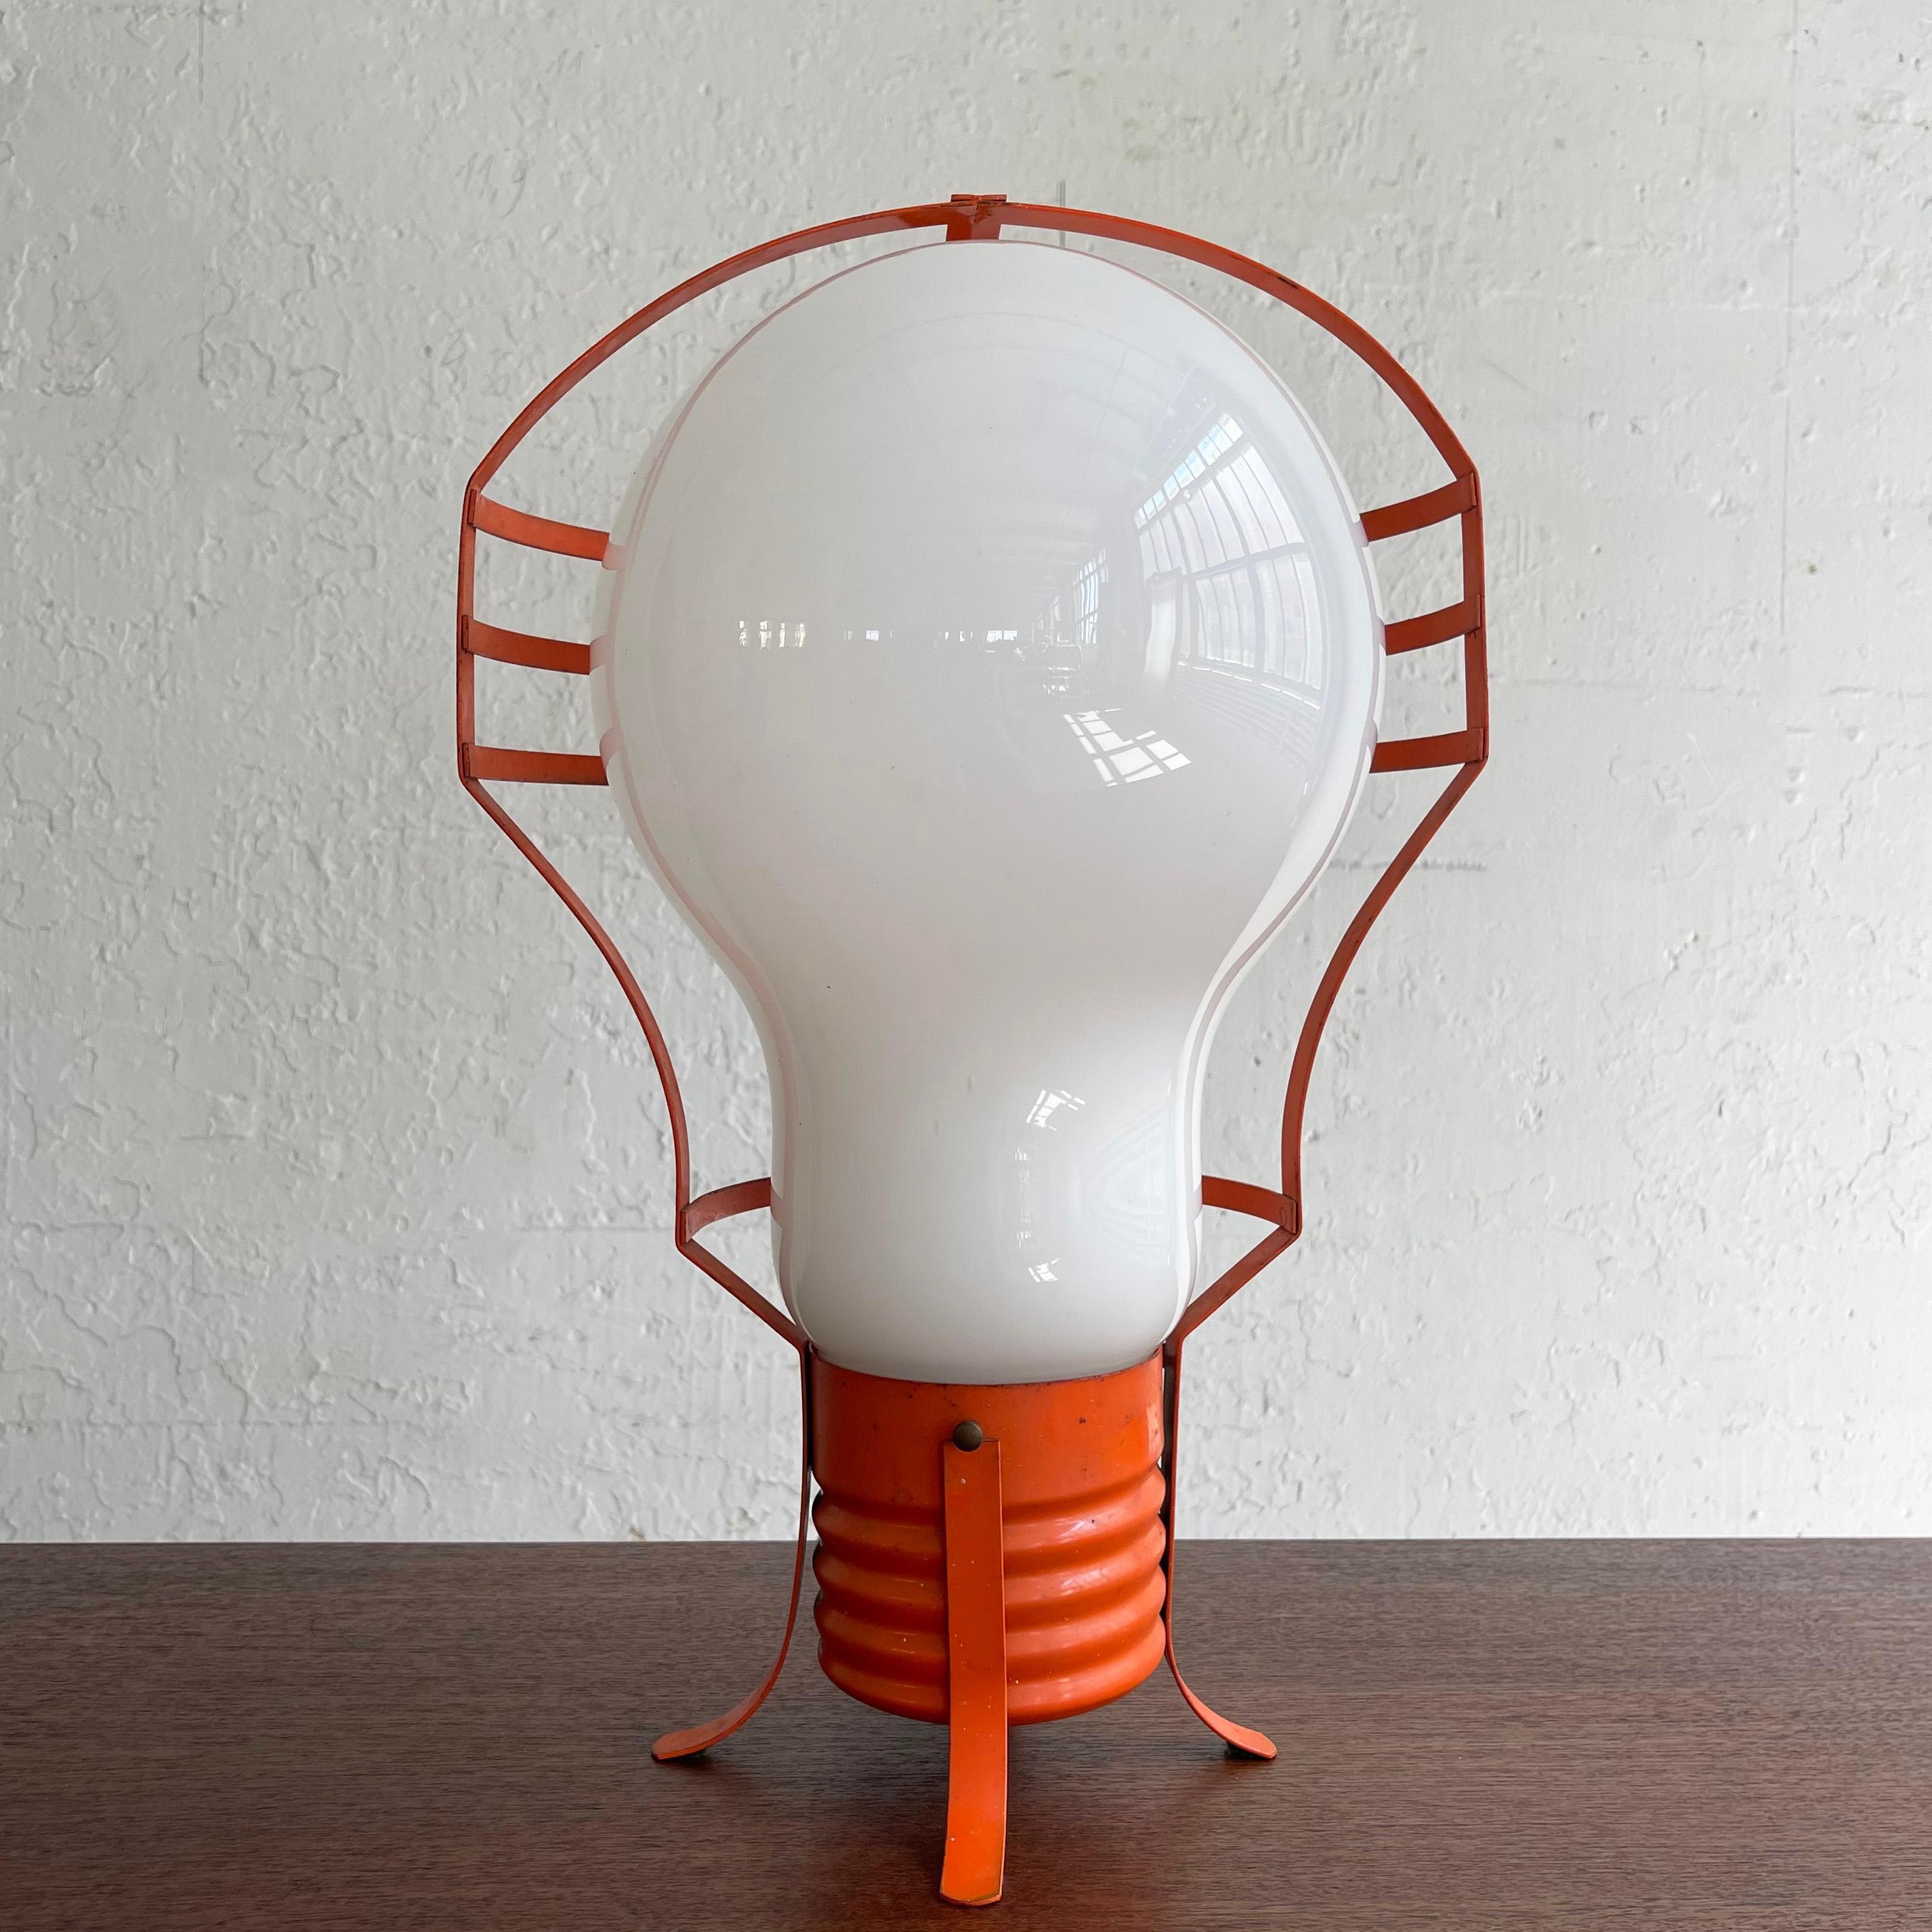 Mod, italienisch, Mid-Century Modern, Pop Art, Tischlampe mit einem übergroßen Milchglas-Glühbirnenschirm in einem orange lackierten Metallrahmen. Die Lampe kann aufrecht auf dem Sockel stehen oder auf der Seite liegen.